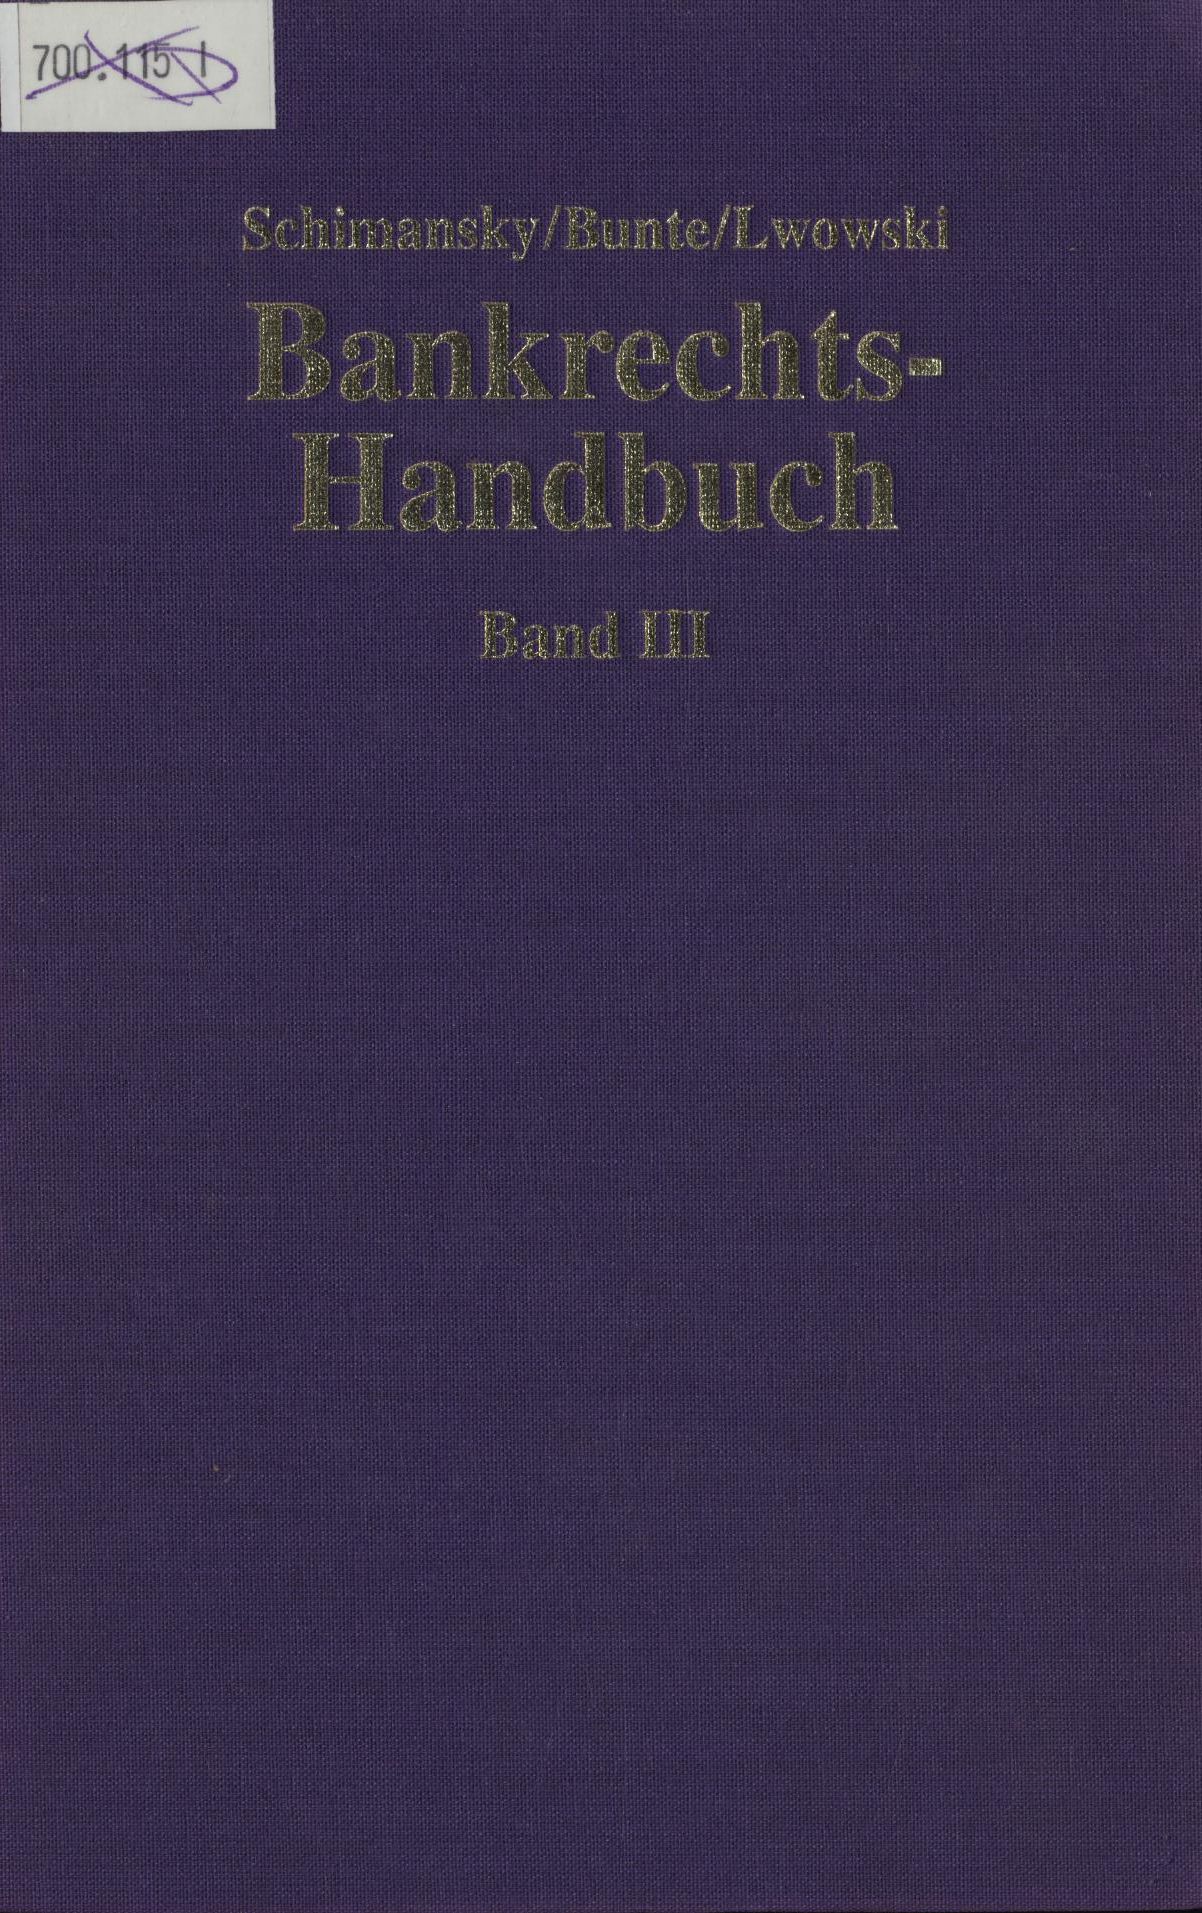 Bankrechts-Handbuch Band III - Schimansky, Herbert, Hermann-Josef Bunte und Hans-Jürgen Lwowski